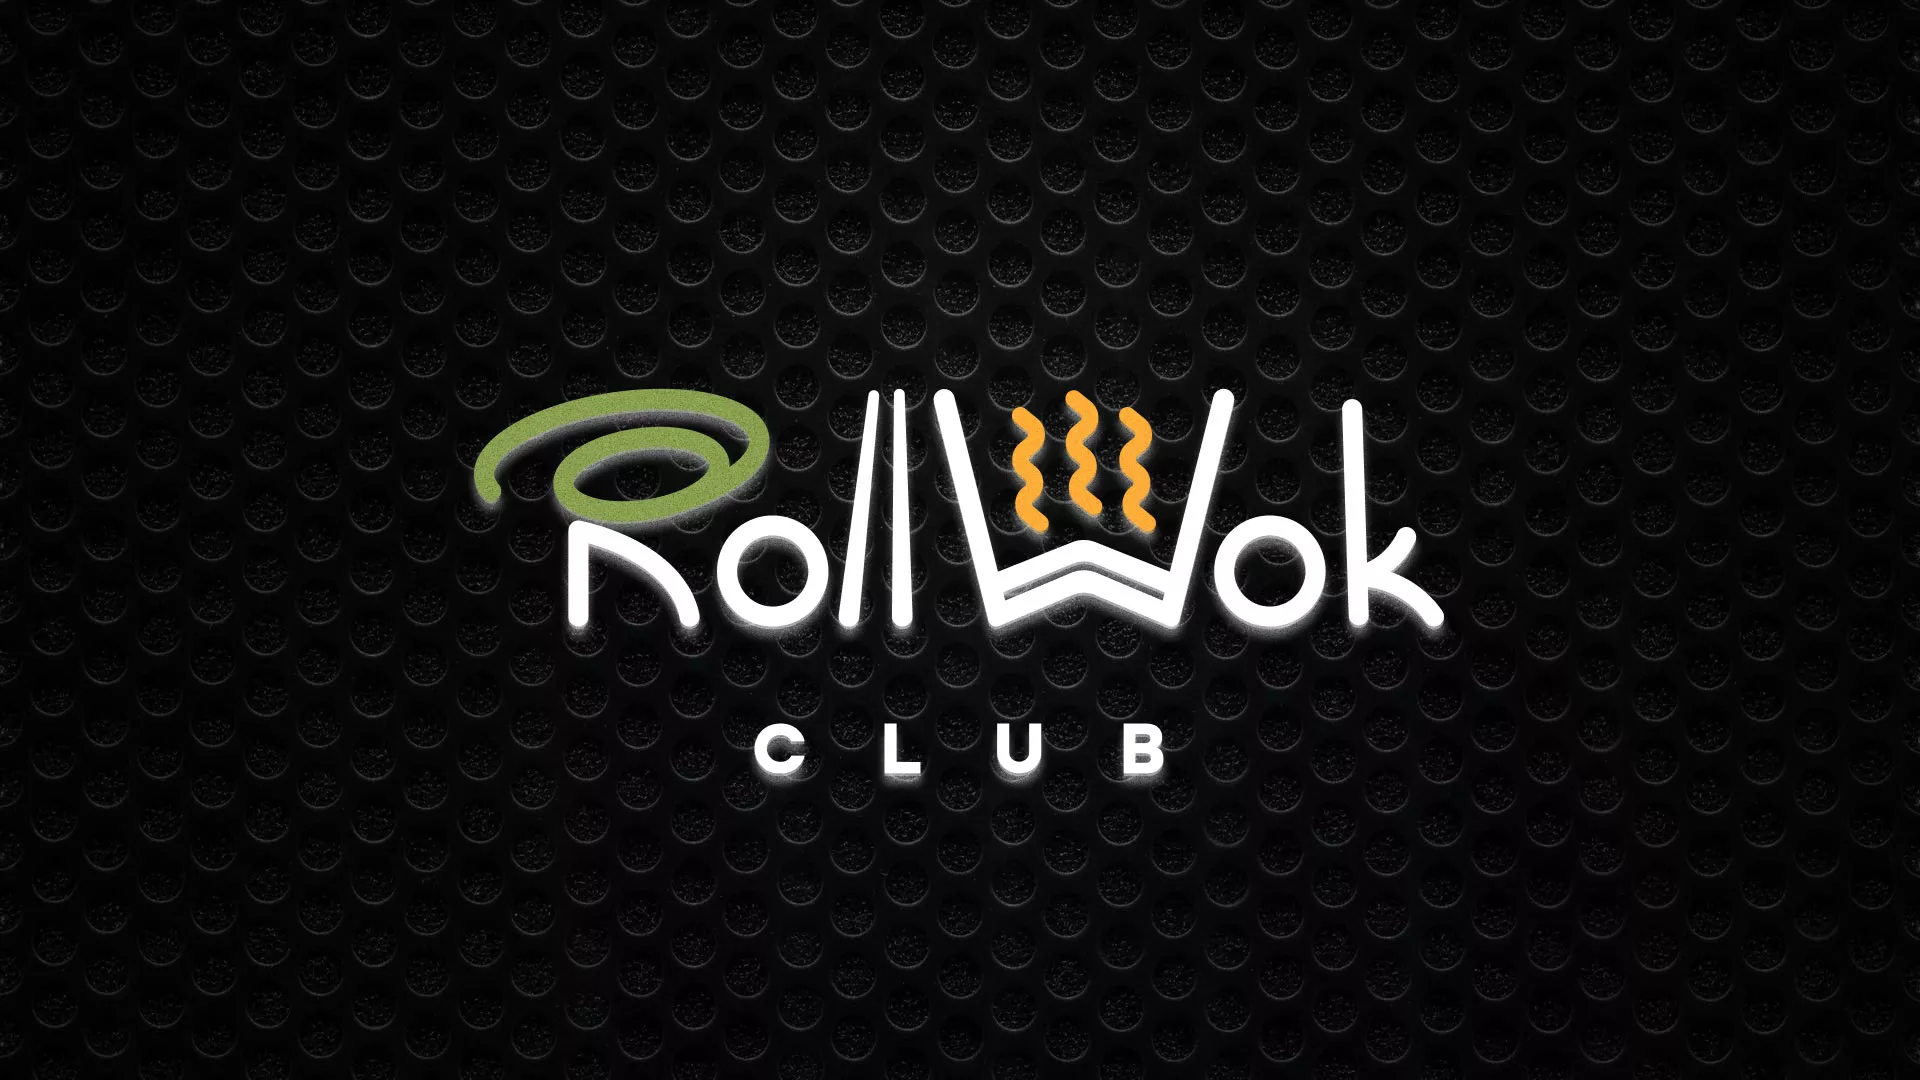 Брендирование торговых точек суши-бара «Roll Wok Club» в Советской Гавани